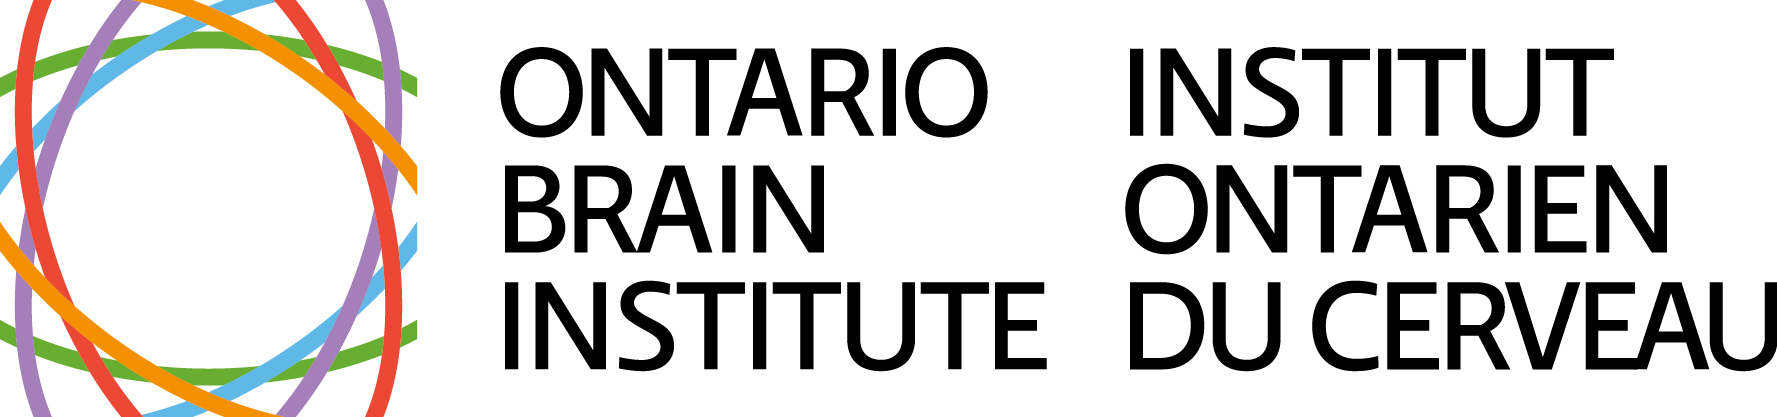 Ontario Brain Institute logo.